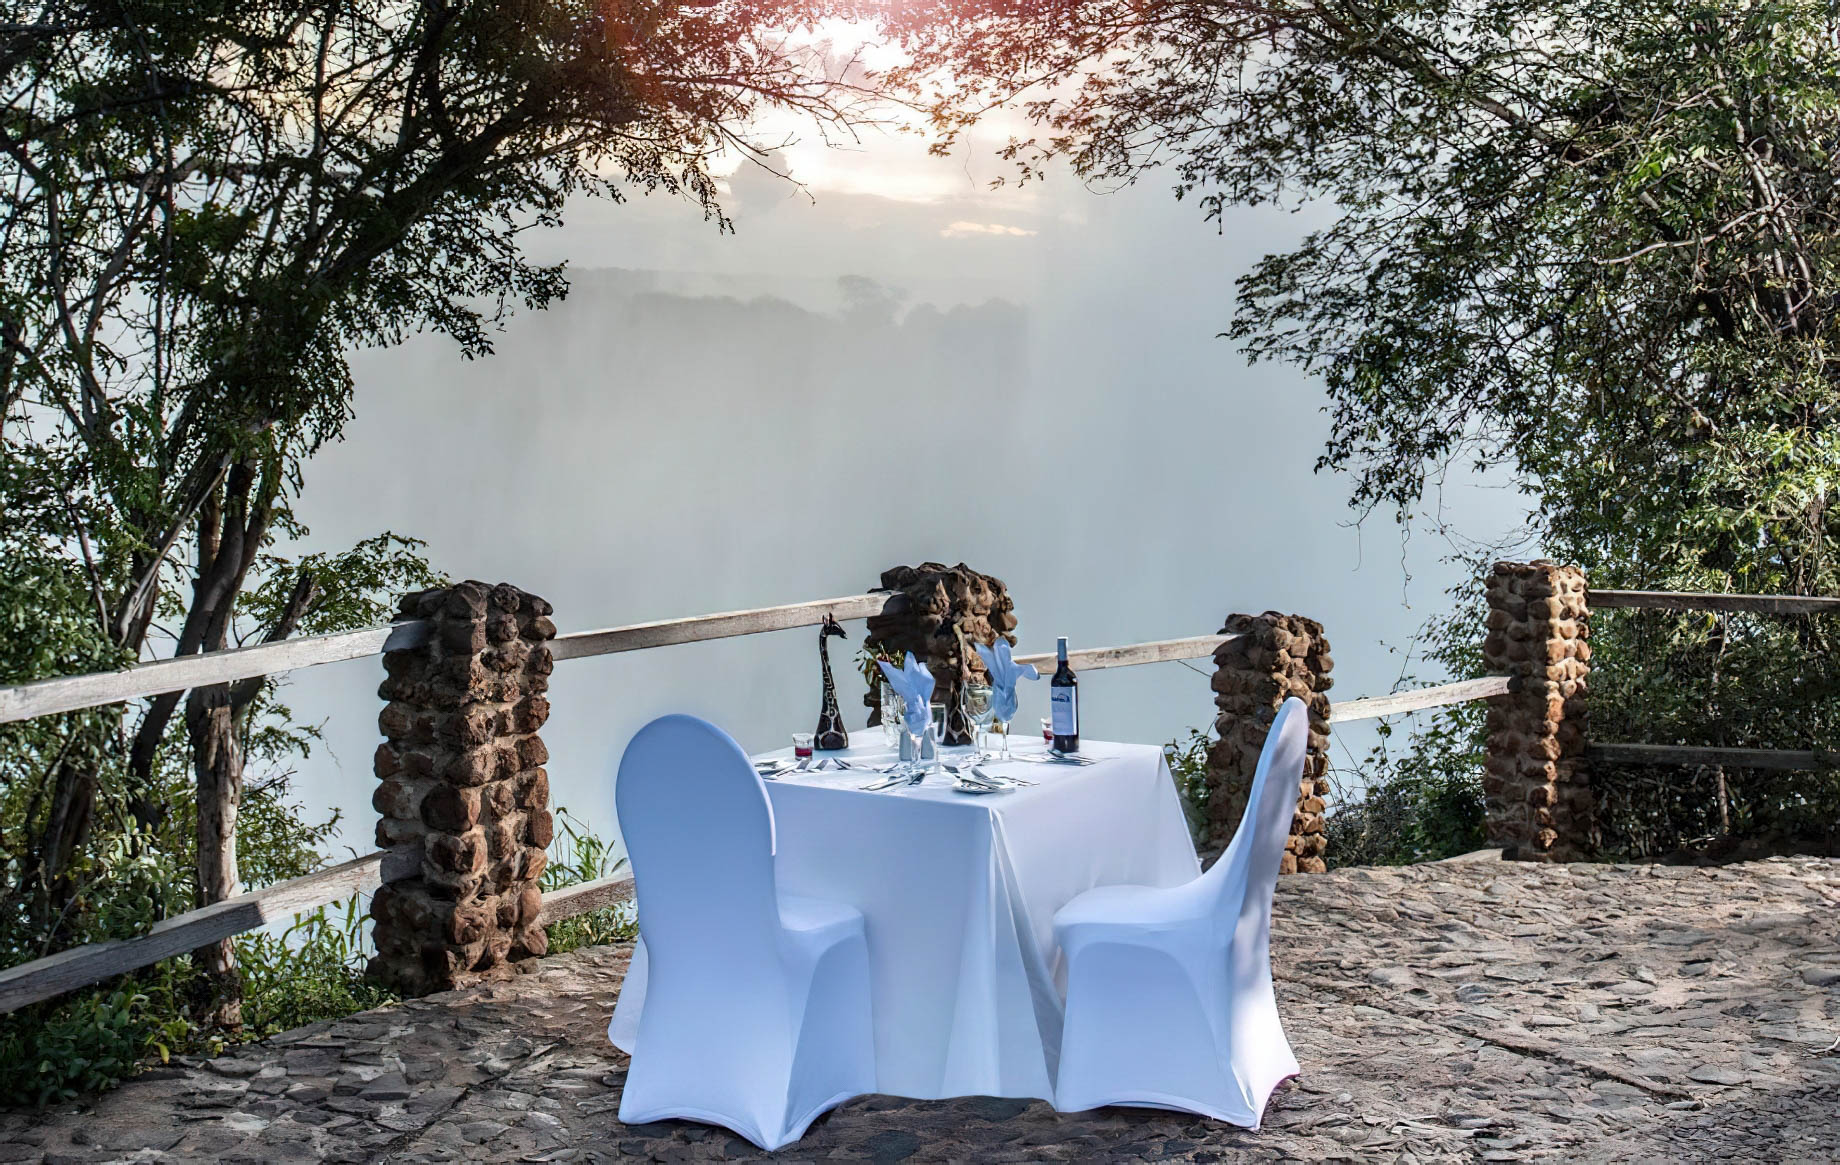 Avani Victoria Falls Resort – Livingstone, Zambia – Victoria Falls Private Dining